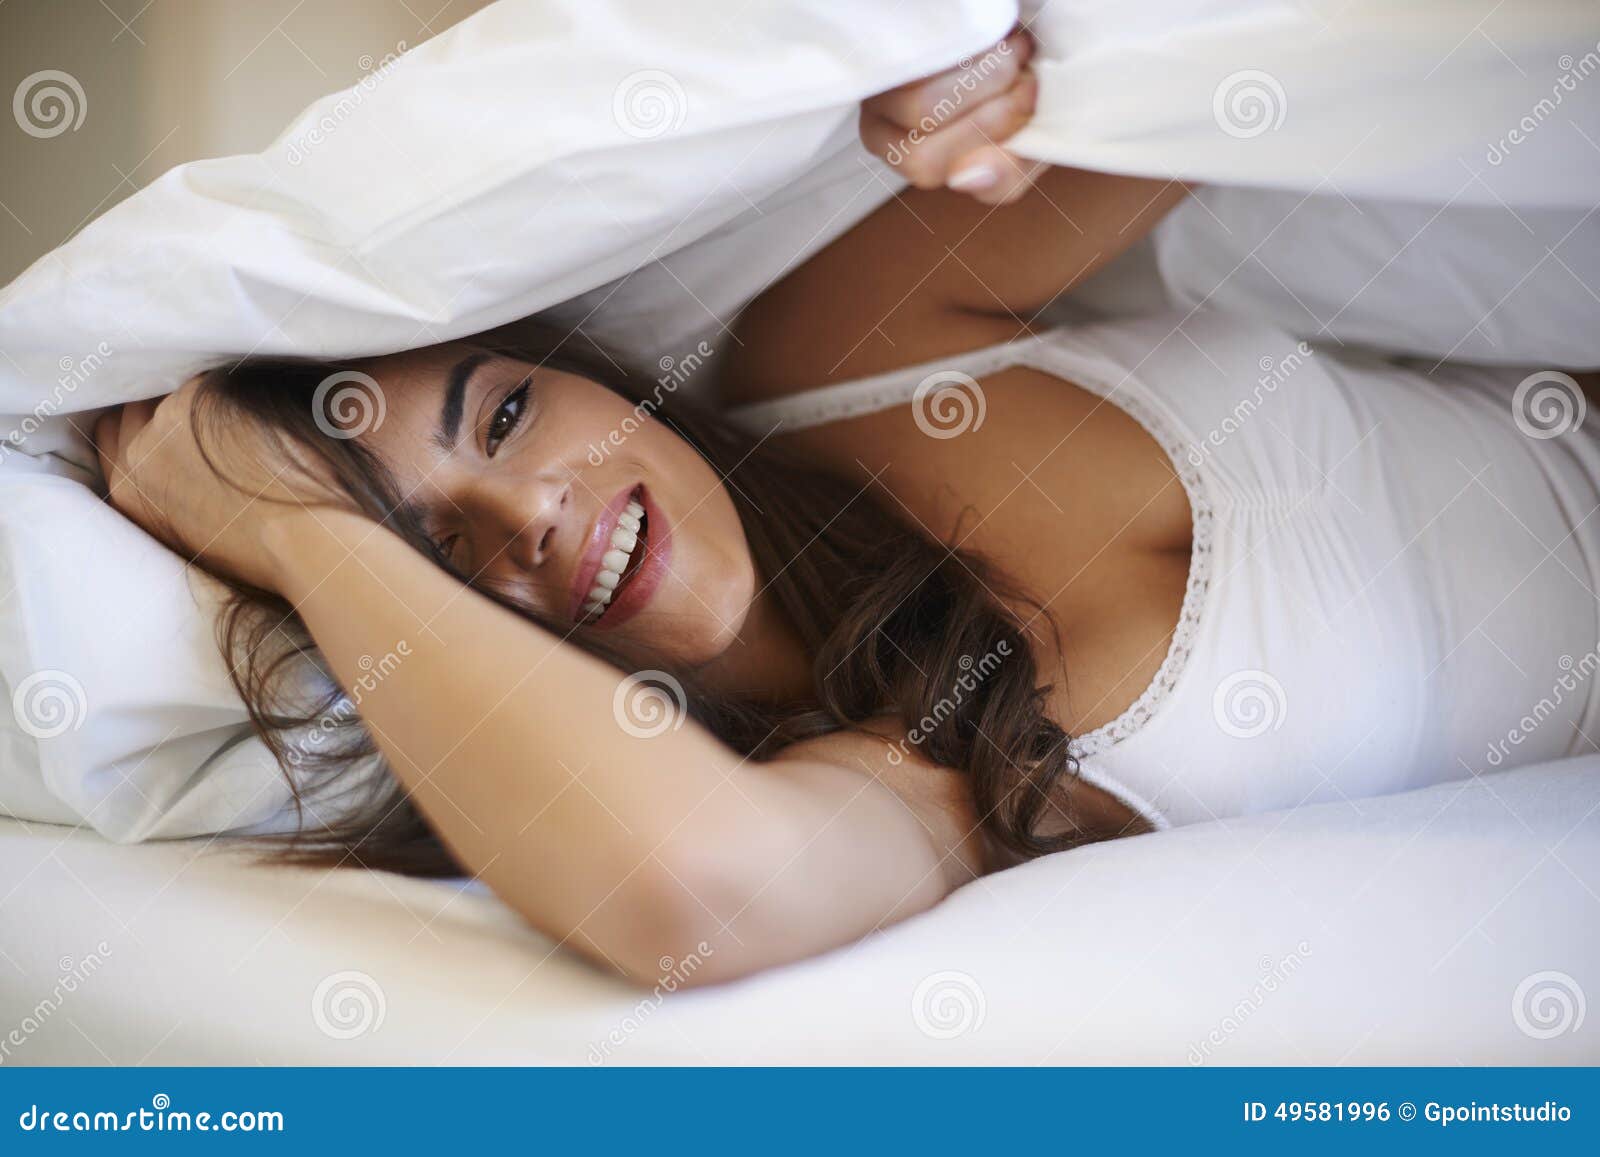 Удовольствие женщины в постели. Молодые женщины в постели. Красивая взрослая женщина в постели Сток. Пышные женщины в кровати. Русская женщина в постели.